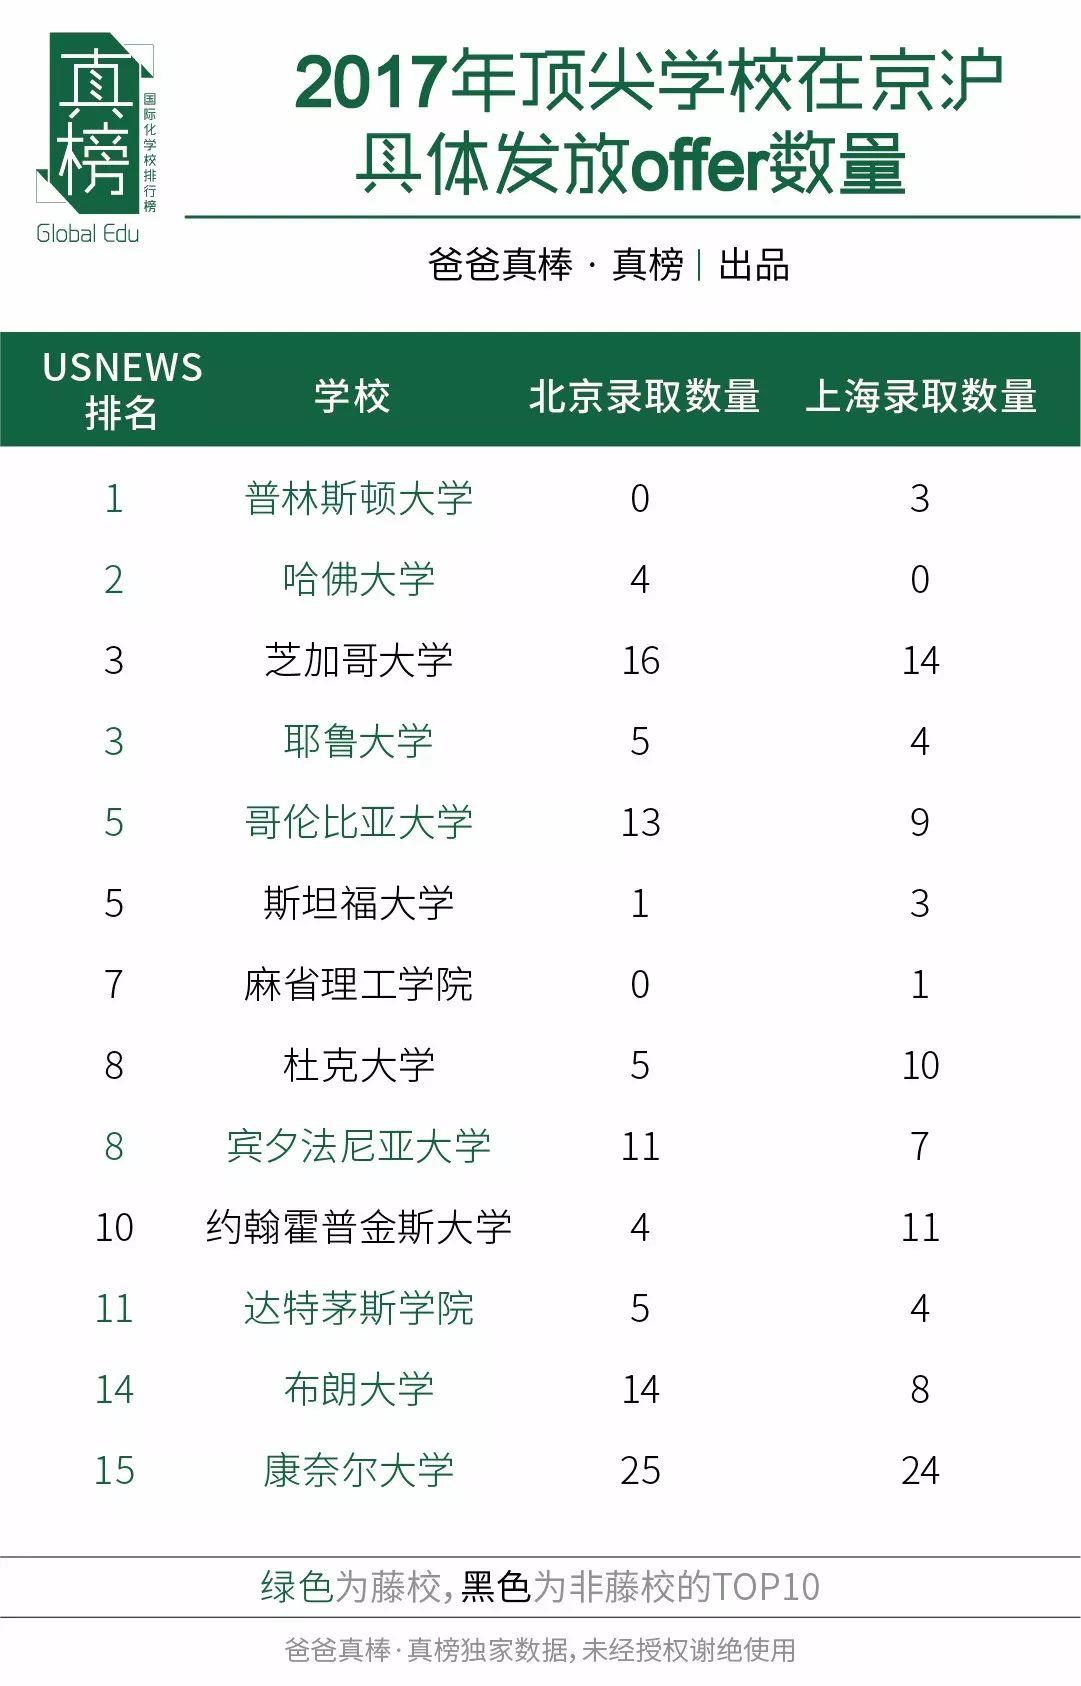 京沪PK -- 谁是国际化教育第一城(2017年数据) 国际学校 数据 第10张